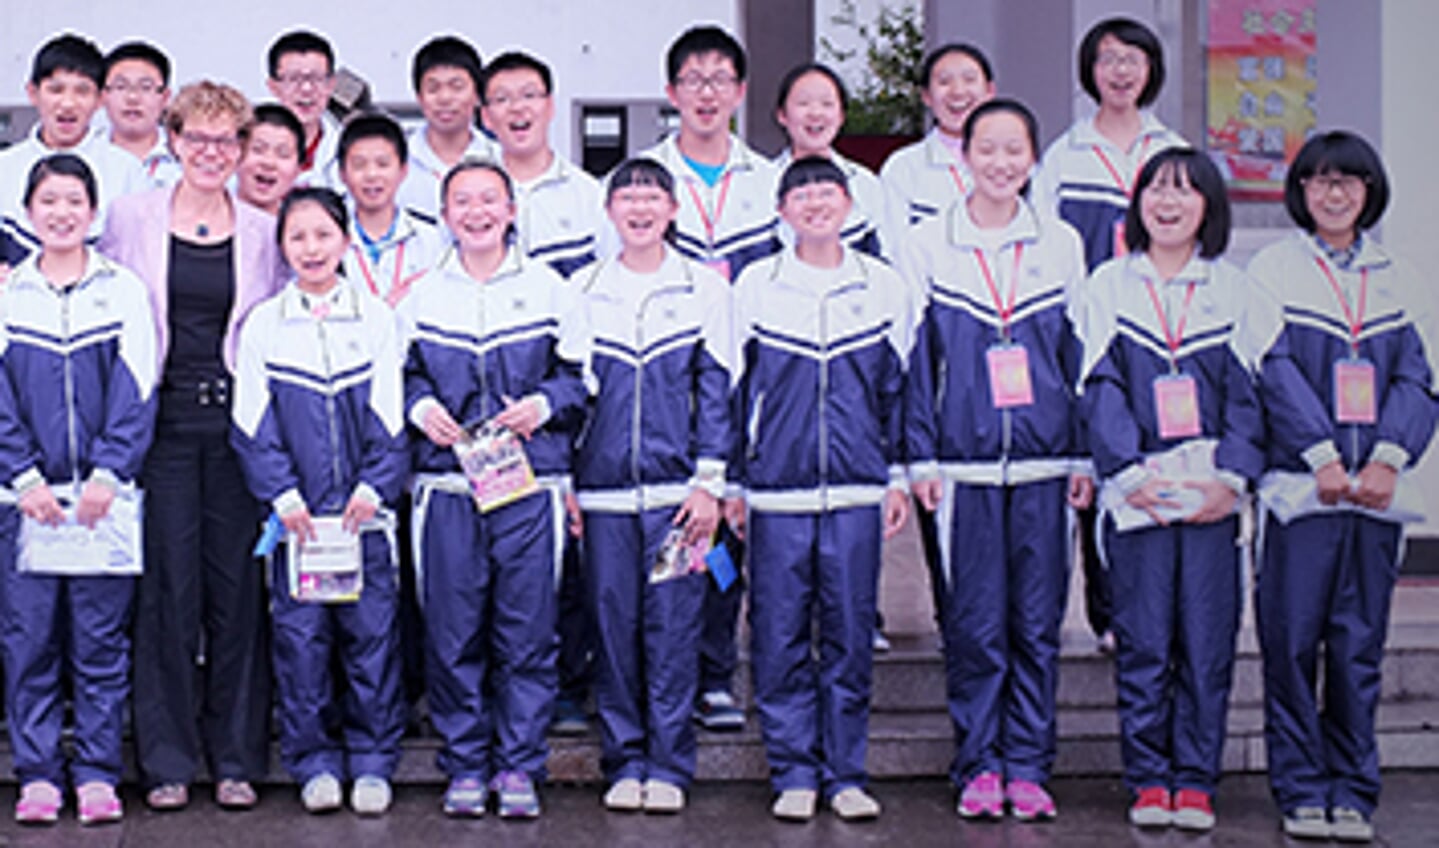 Directeur Chinese partnerschool bezoekt Van der Capellen scholengemeenschap